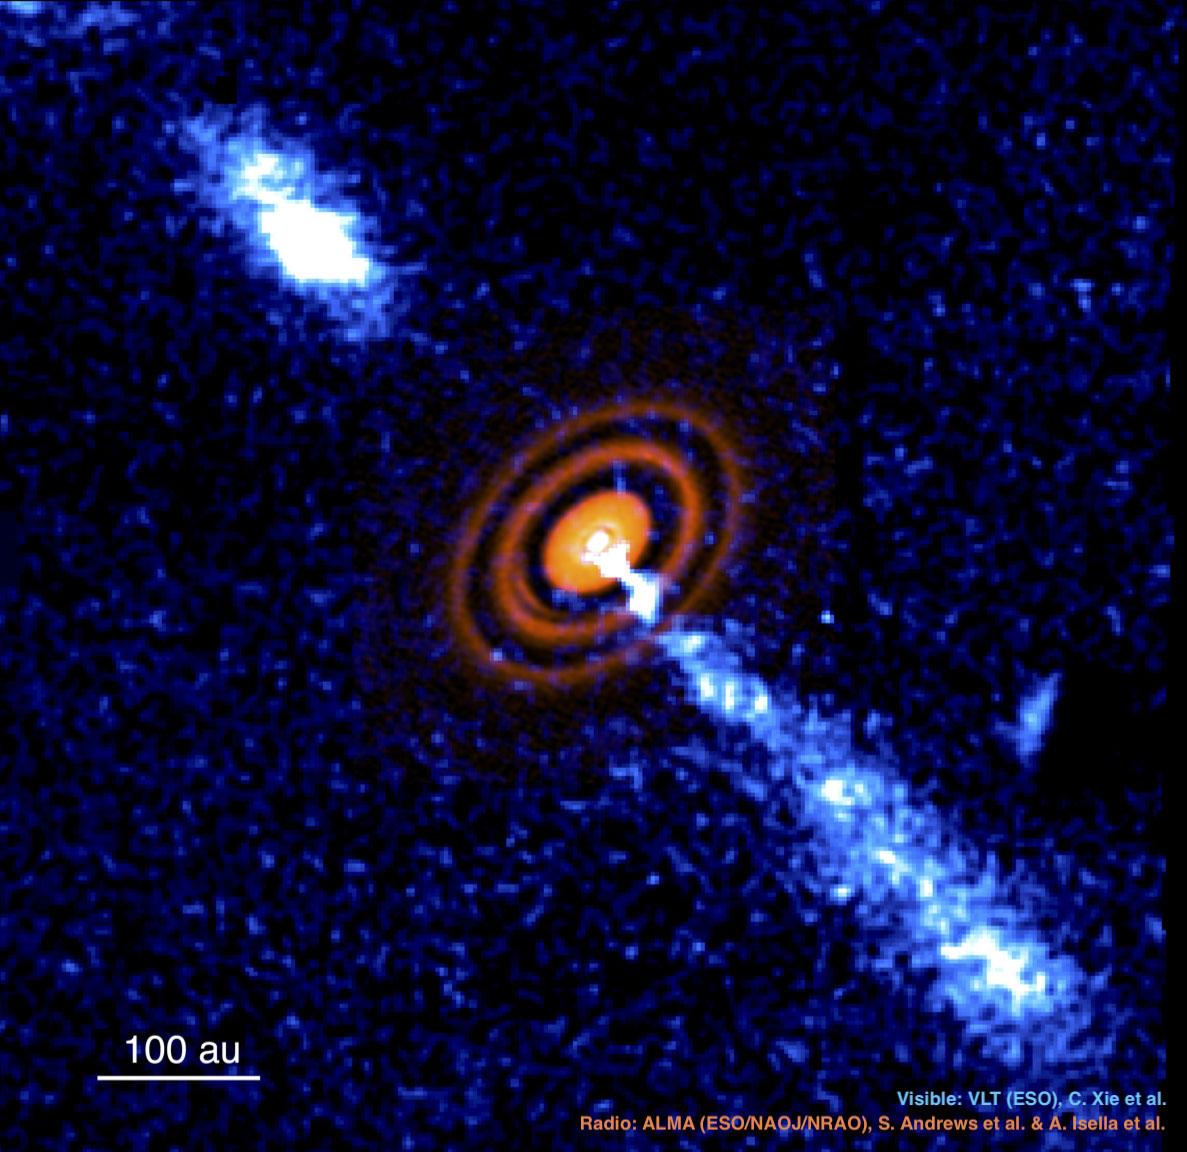 صورة للنظام النجمي HD 163296 تظهر قرصاً فيه فجوات وتدفّقين، التقطت بالأشعّة الراديويّة بواسطة "مصفوف أتاكاما المليمتري الكبير" (ALMA) والضوء المرئي بواسطة "التلسكوب الكبير جدّاً" (VLT)